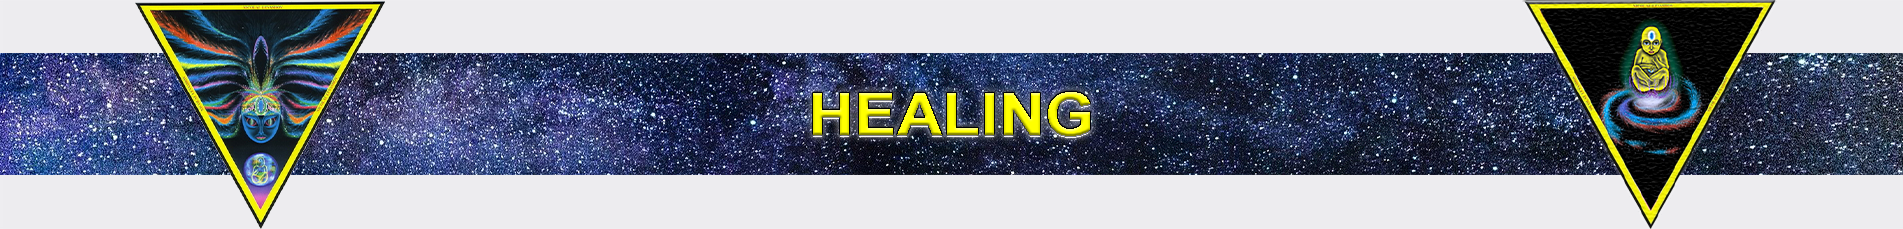 healing1.png